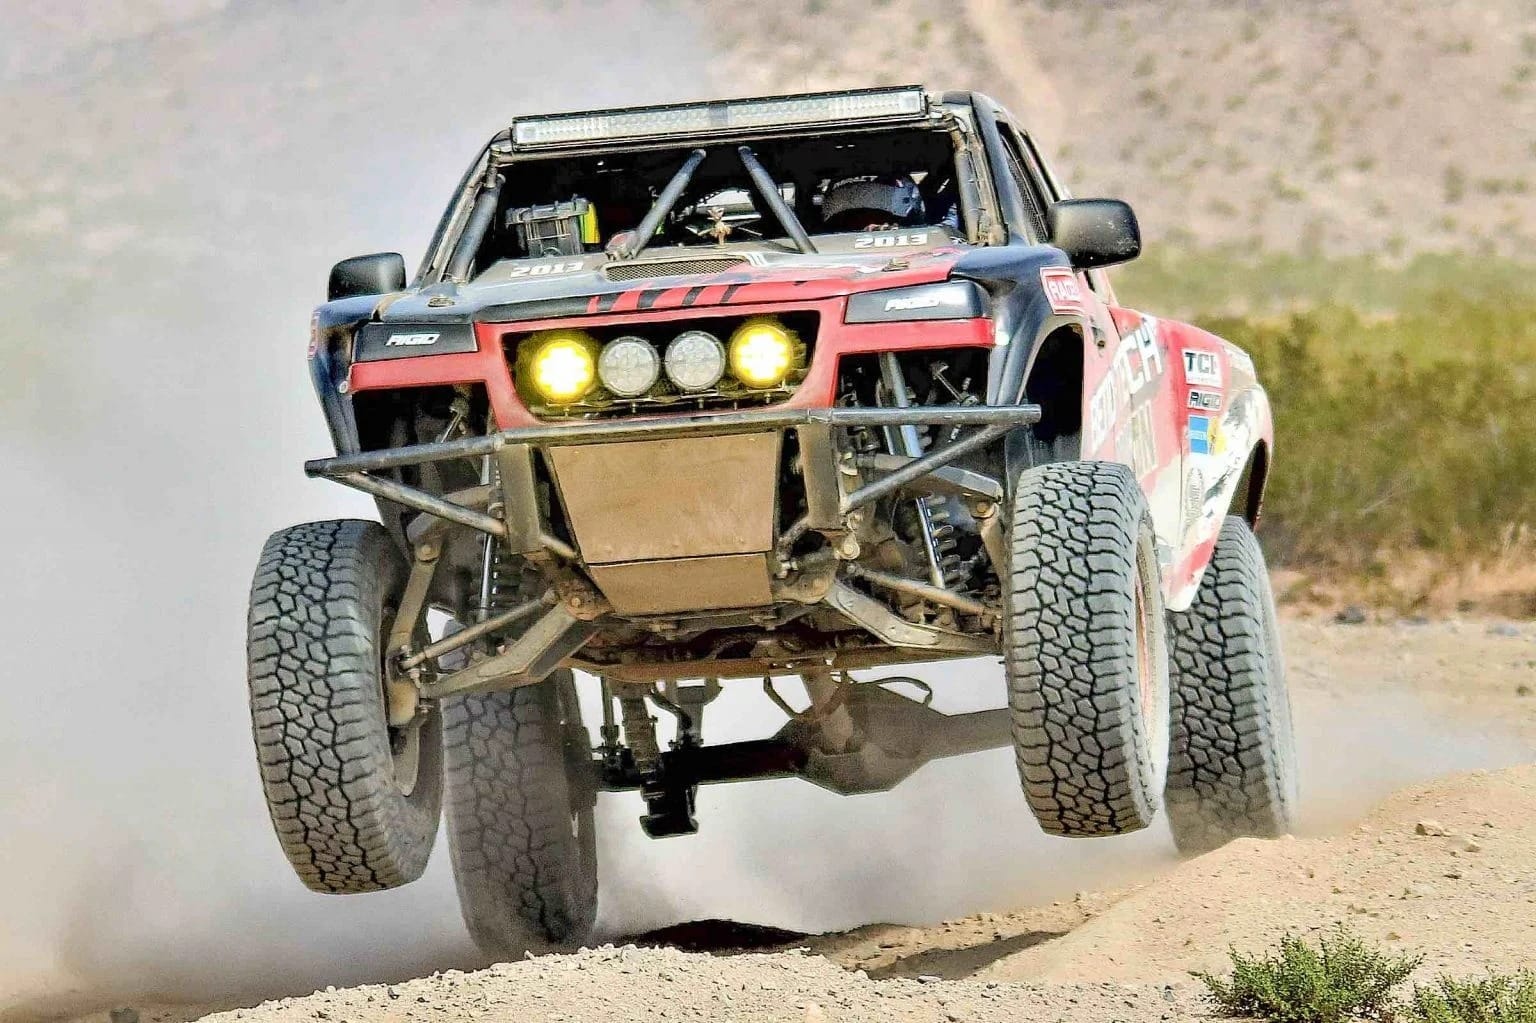 An off-road truck racing through the desert.